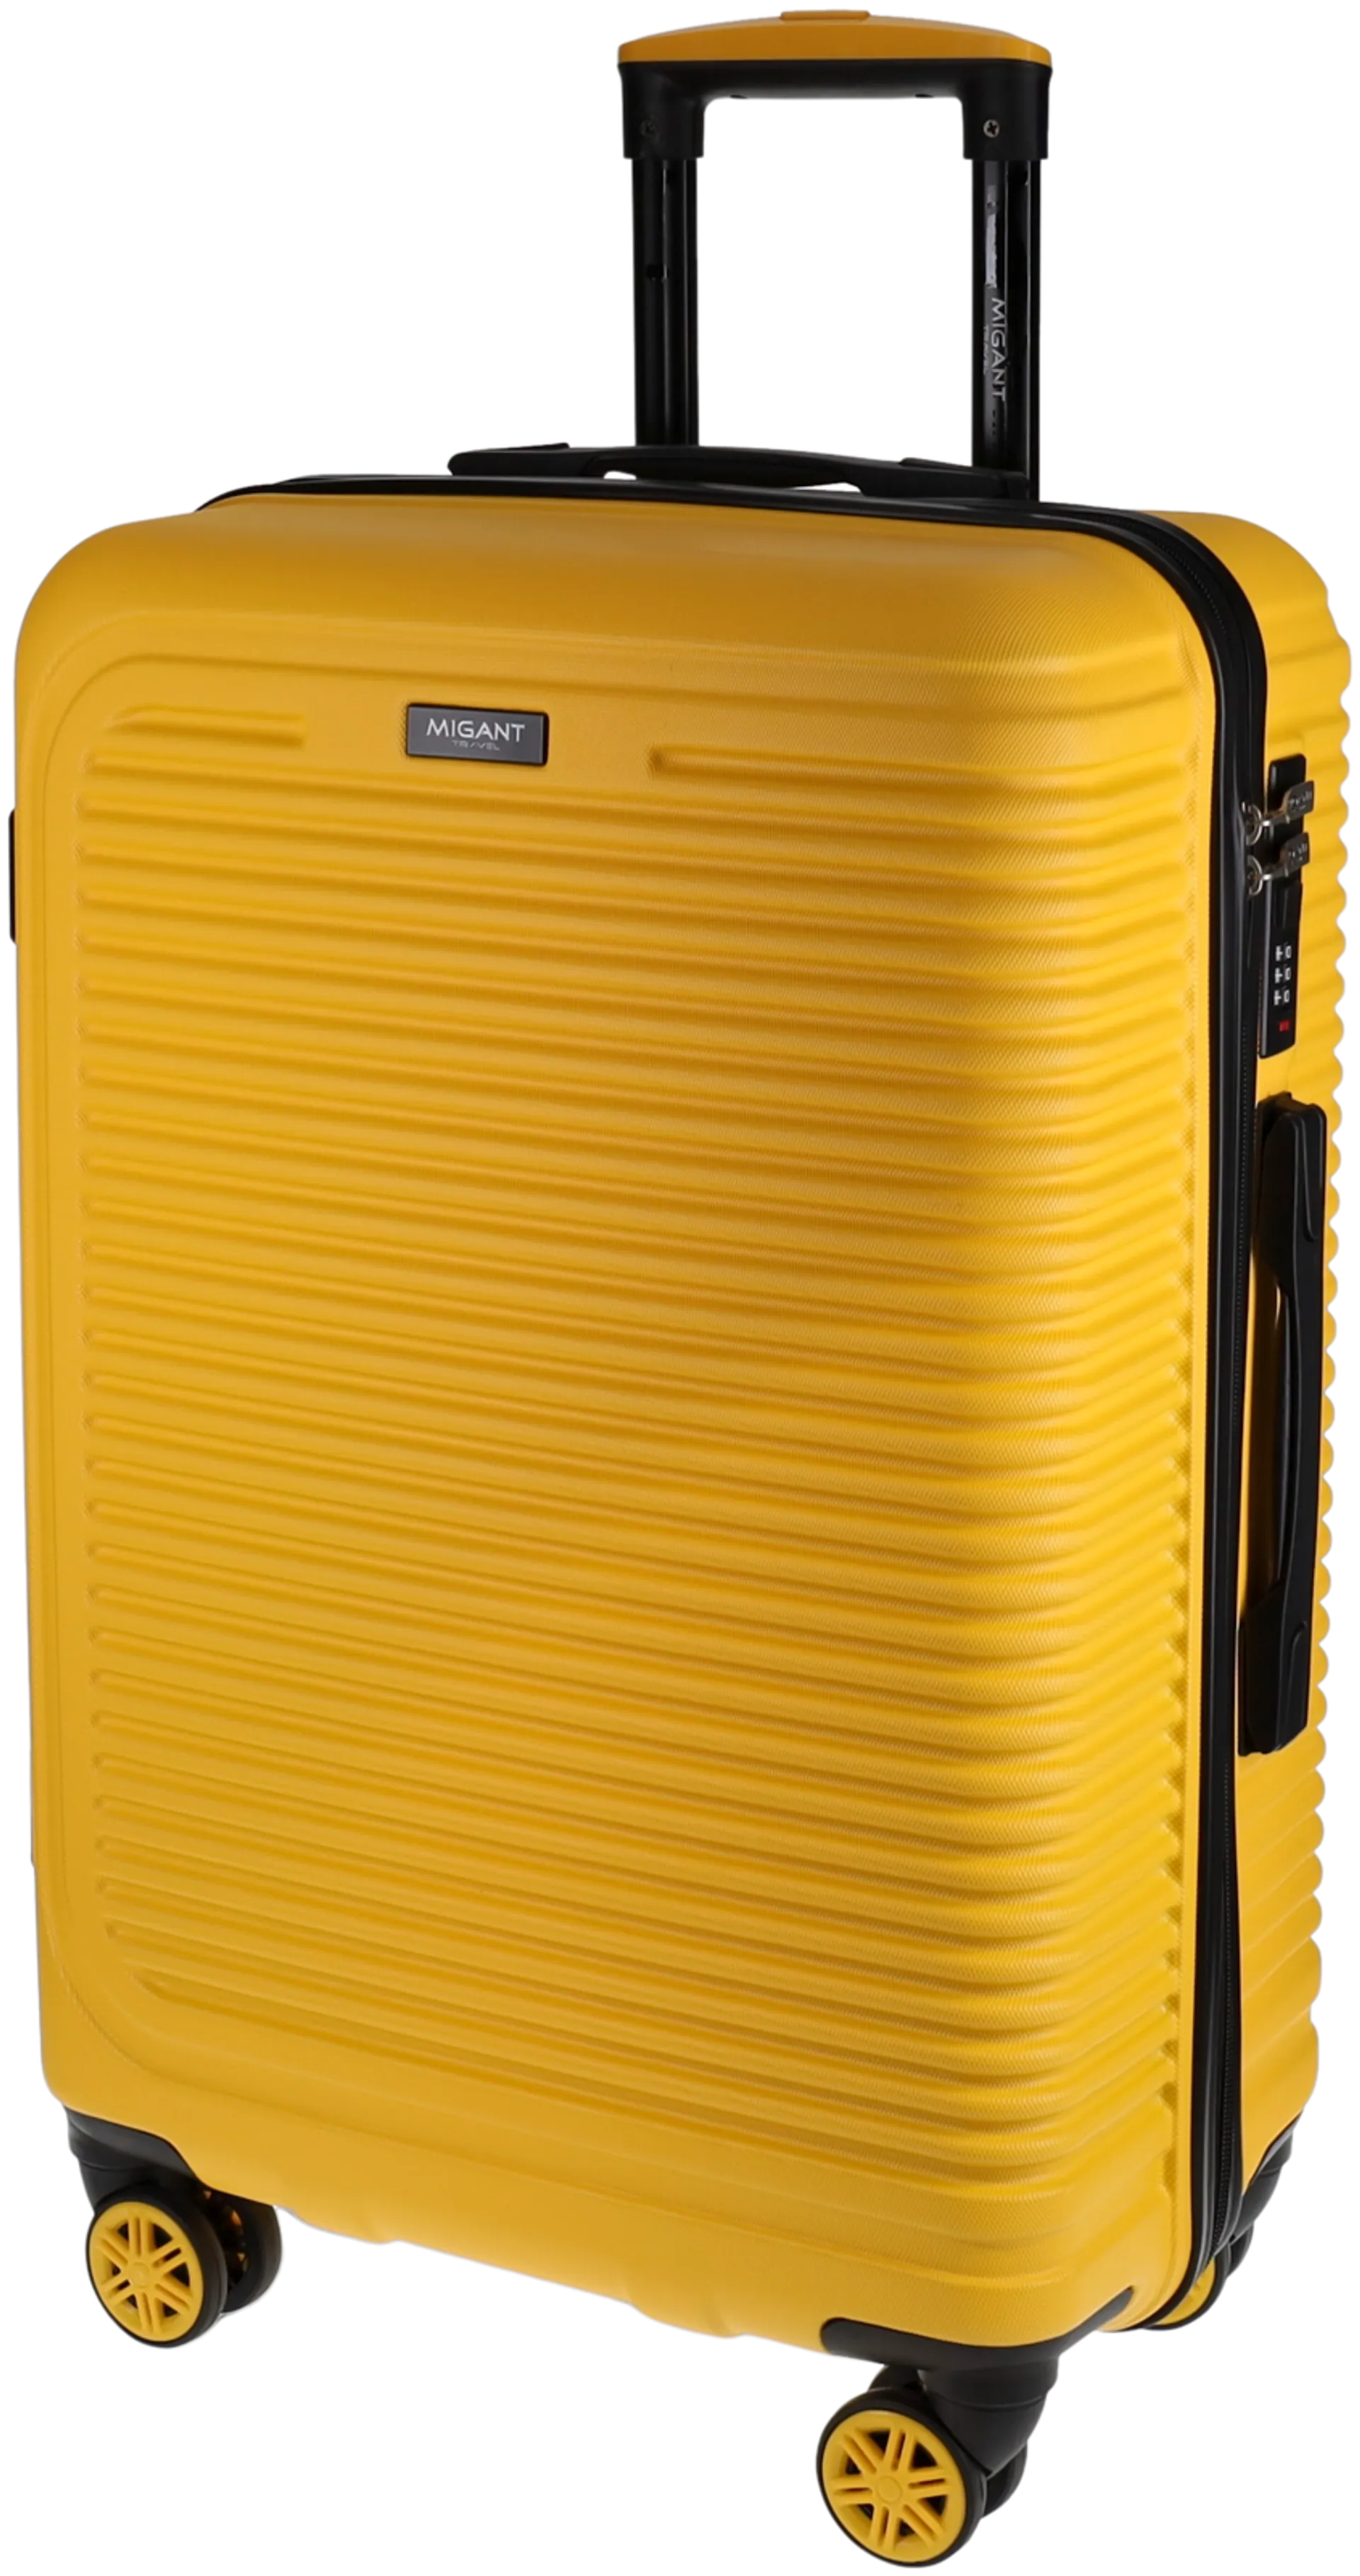 Migant matkalaukku MGT-27 65 cm keltainen - 2